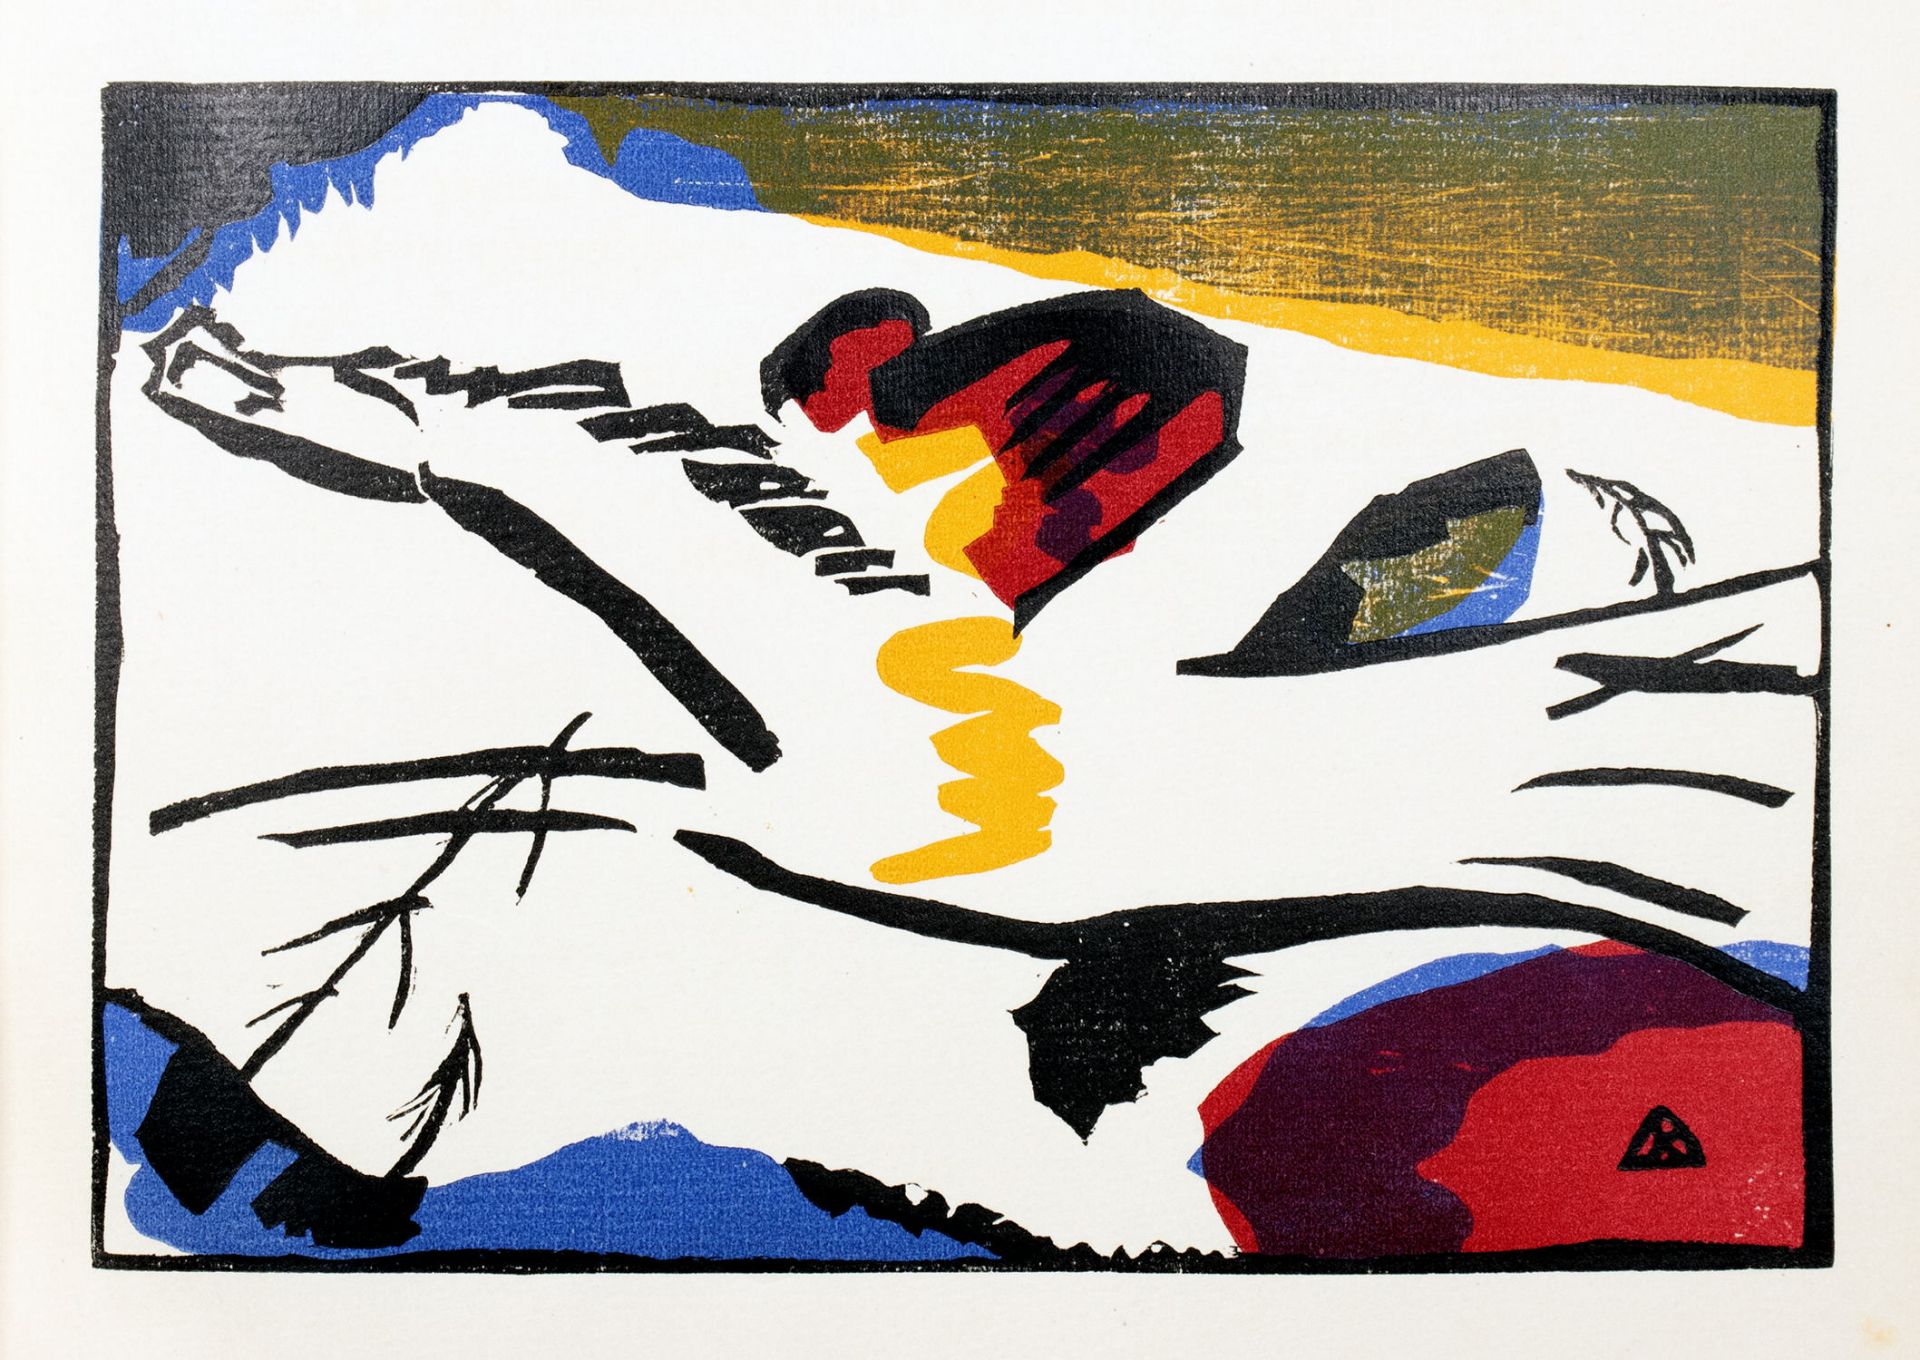 [Wassily] Kandinsky. Klänge - Bild 8 aus 11